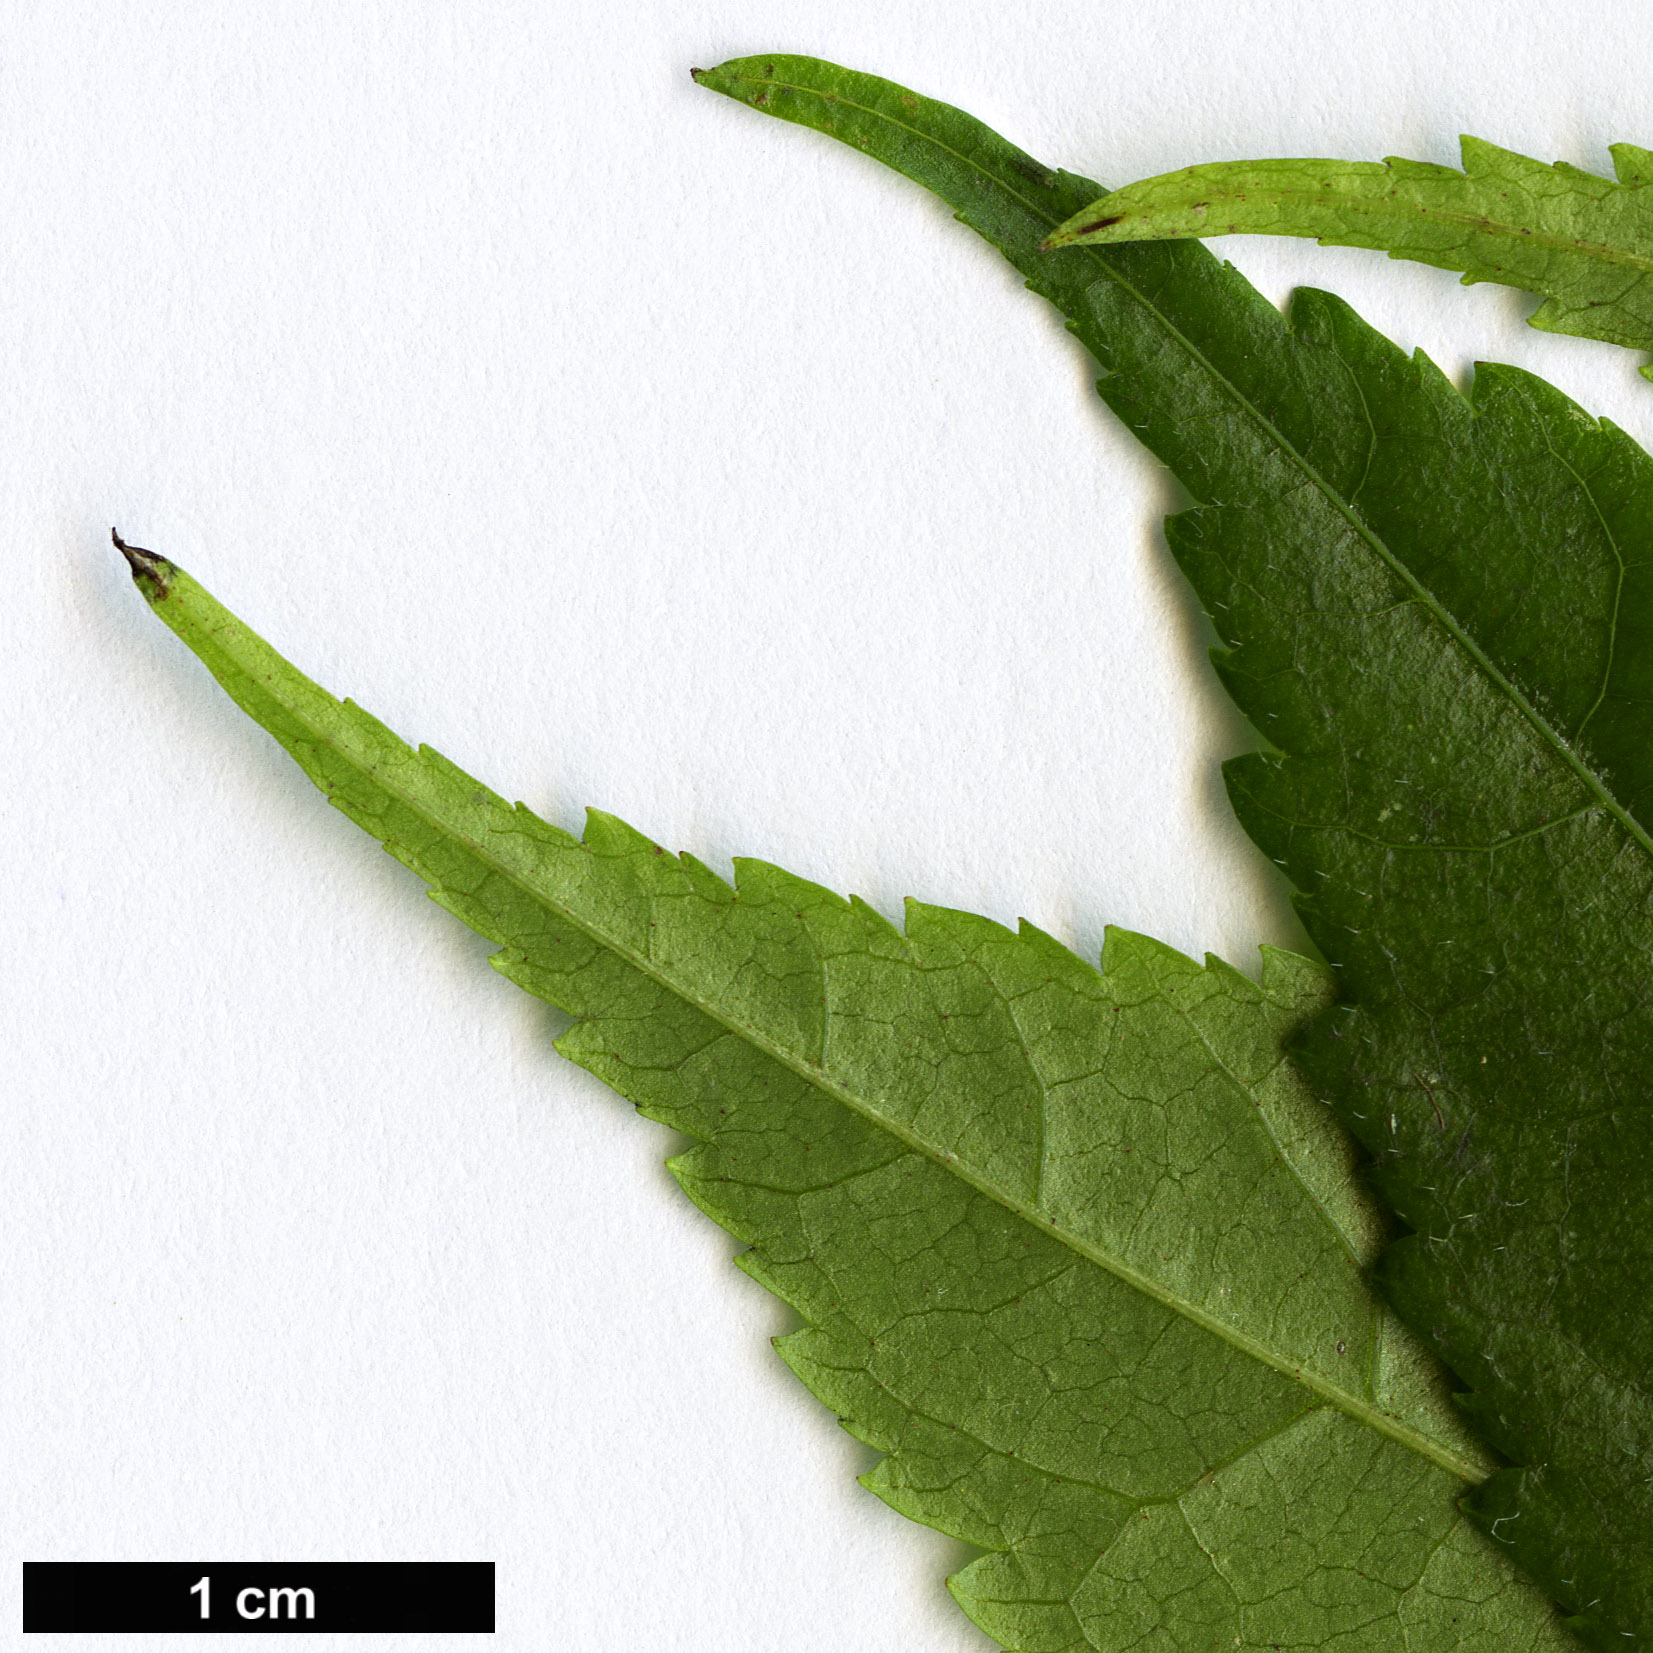 High resolution image: Family: Juglandaceae - Genus: Engelhardia - Taxon: spicata